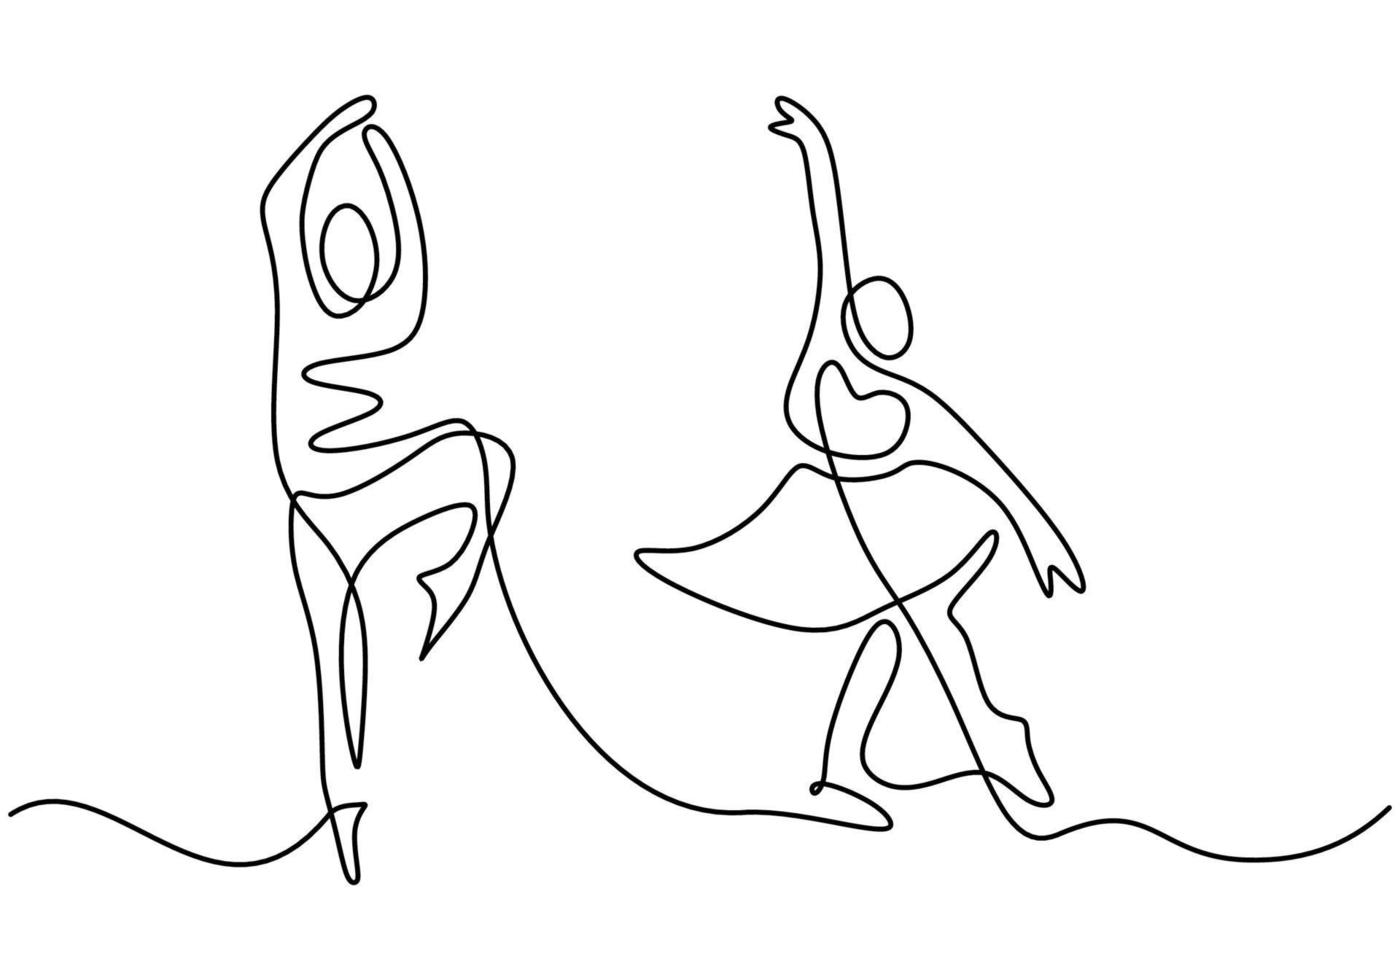 dibujo de línea continua de pareja amorosa mujer y hombre bailando.  enérgico baile joven pareja de